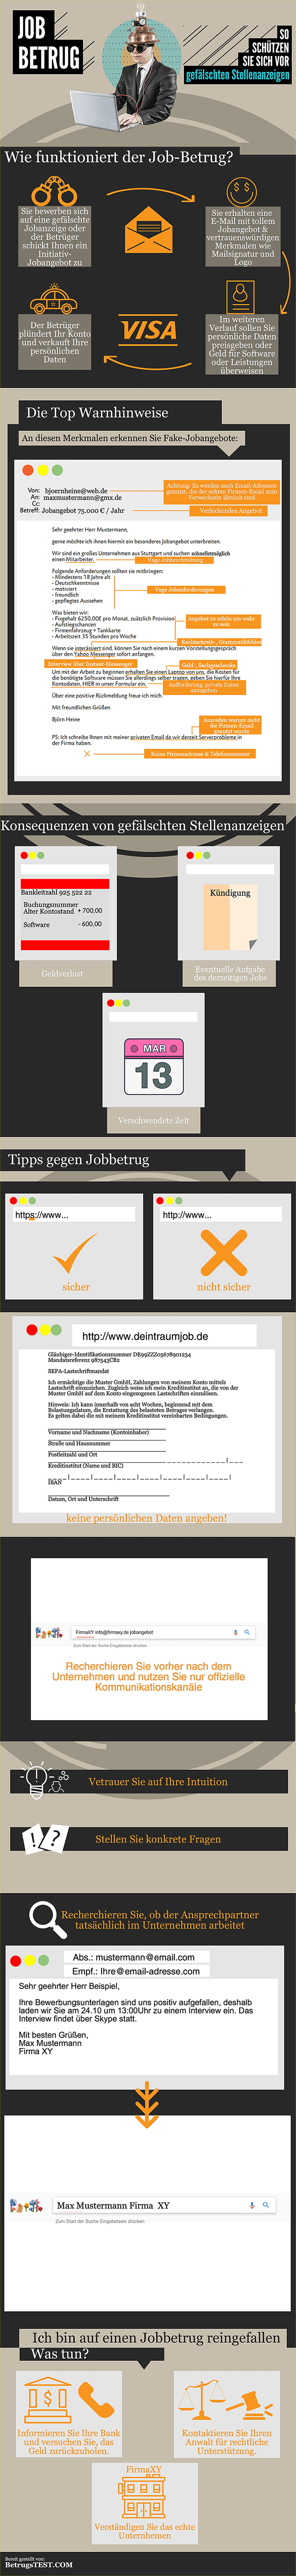 Infografik zum Internetbetrug mit gefälschten Stellenanzeigen - Quelle: betrugstest.com